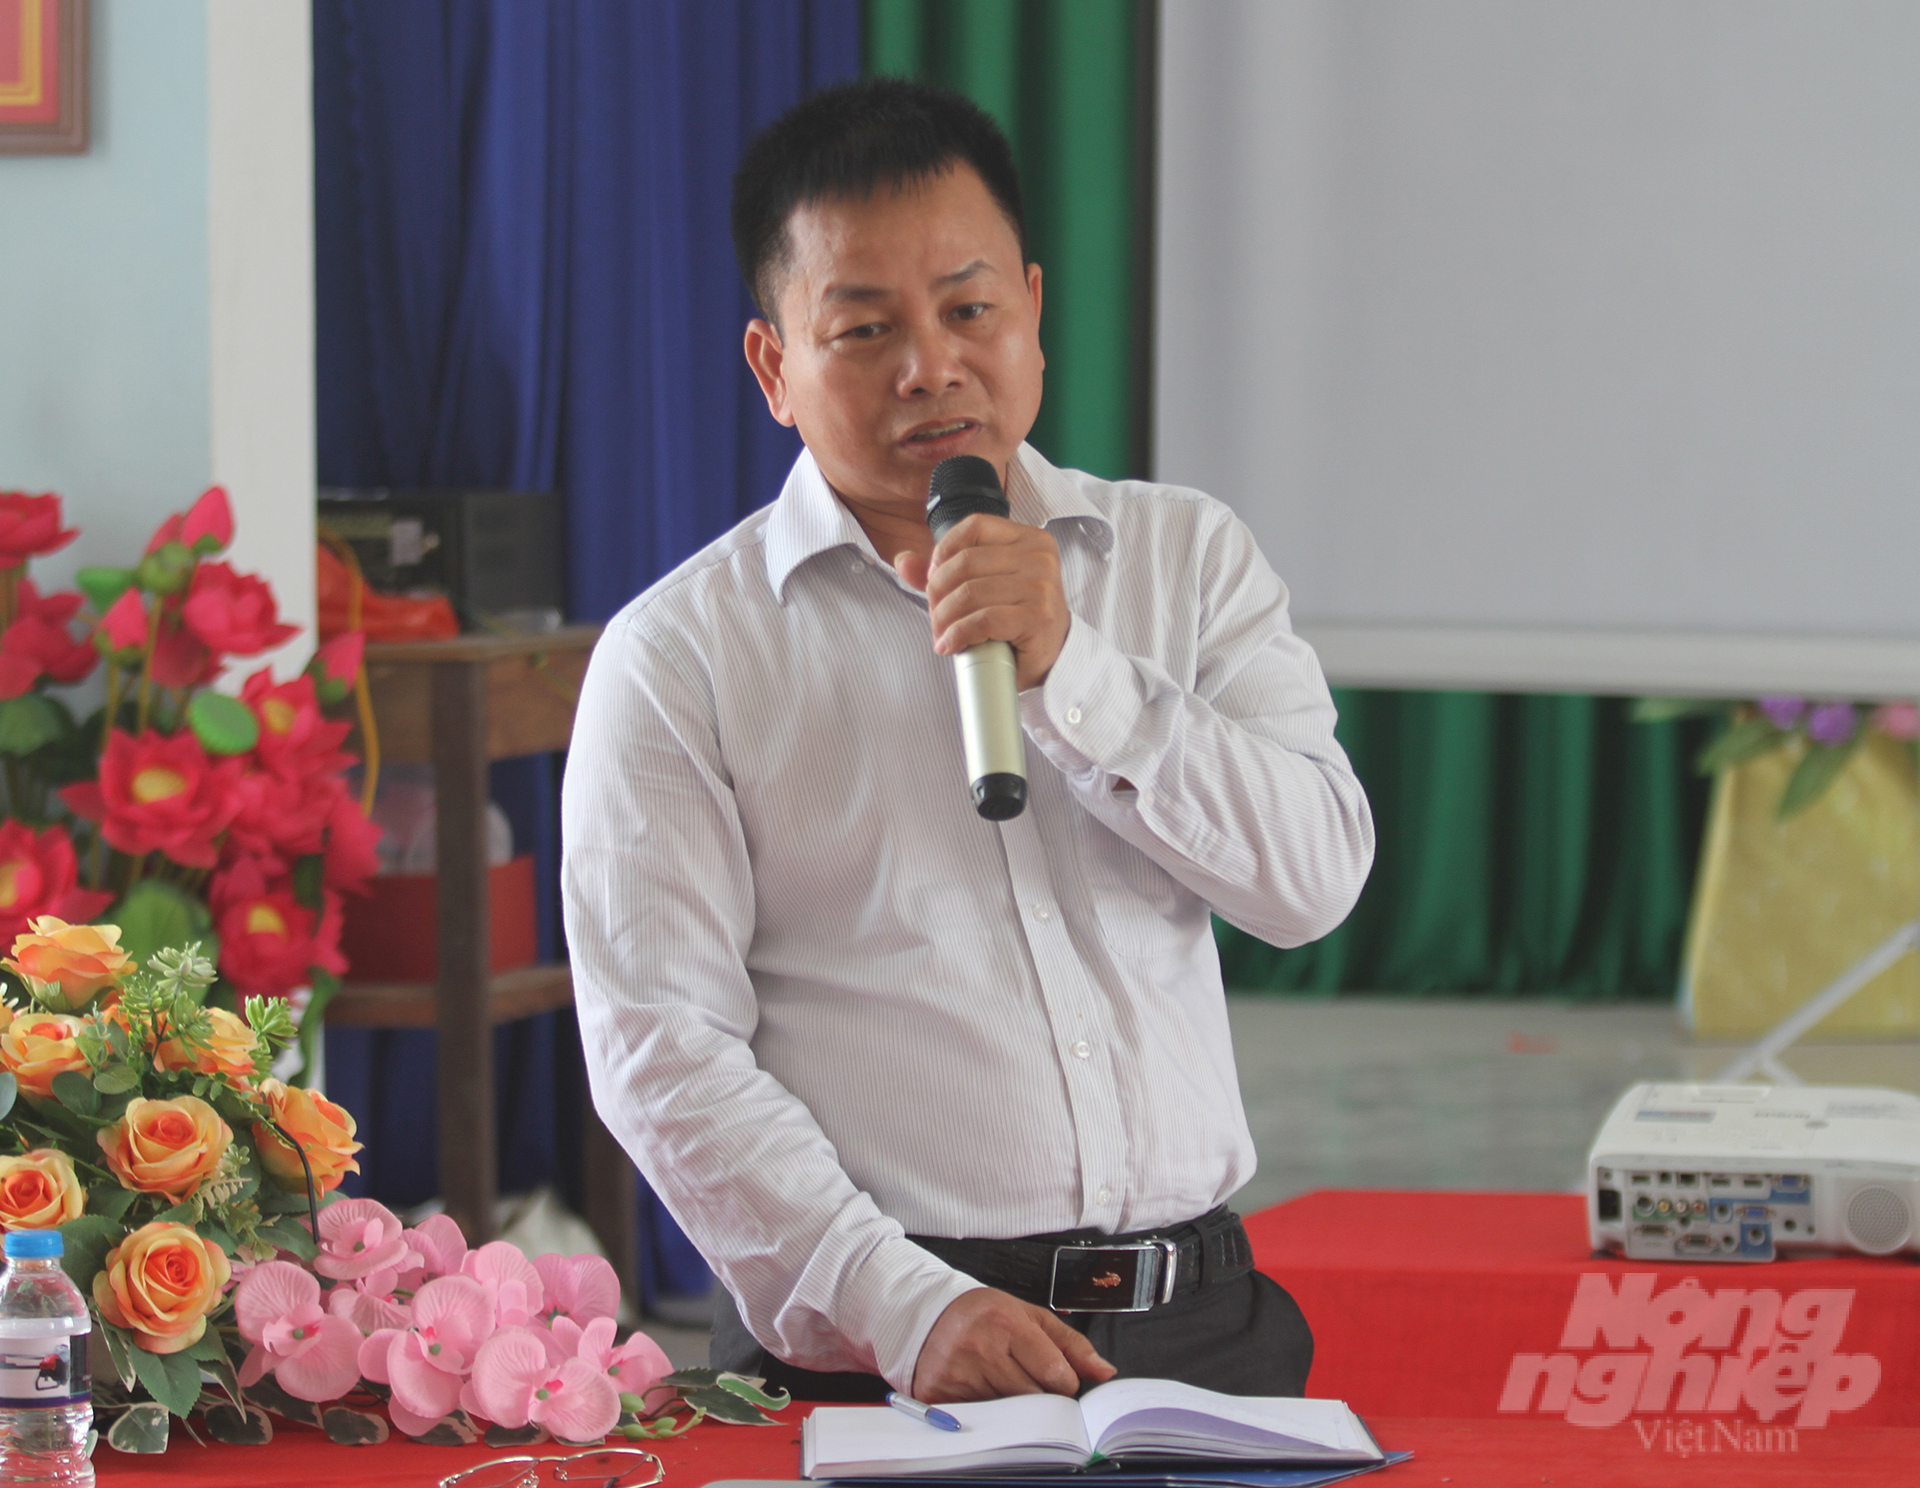 Ông Nguyễn Đức Trường, Chủ tịch HĐQT, Tổng Giám đốc Công ty Cổ phần Đại Thành phát biểu tại hội thảo. Ảnh: Việt Khánh.